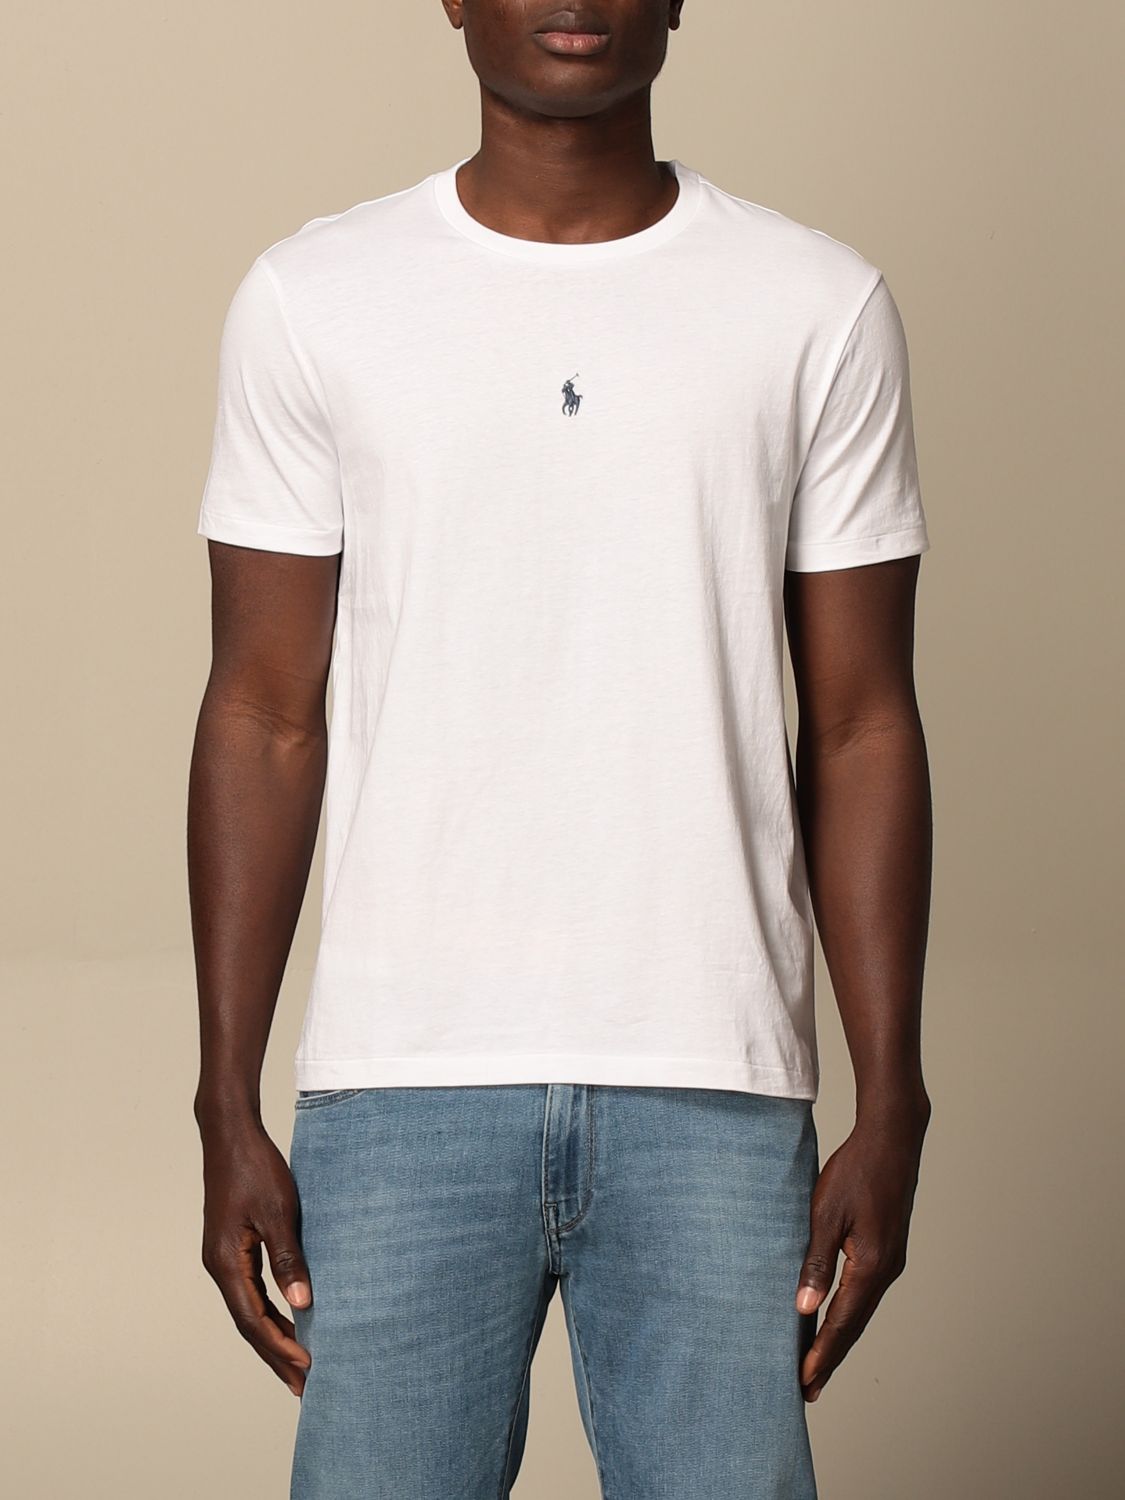 Polo Ralph Lauren Outlet: basic logo t-shirt - White | Polo Ralph Lauren  t-shirt 710839046 online on 